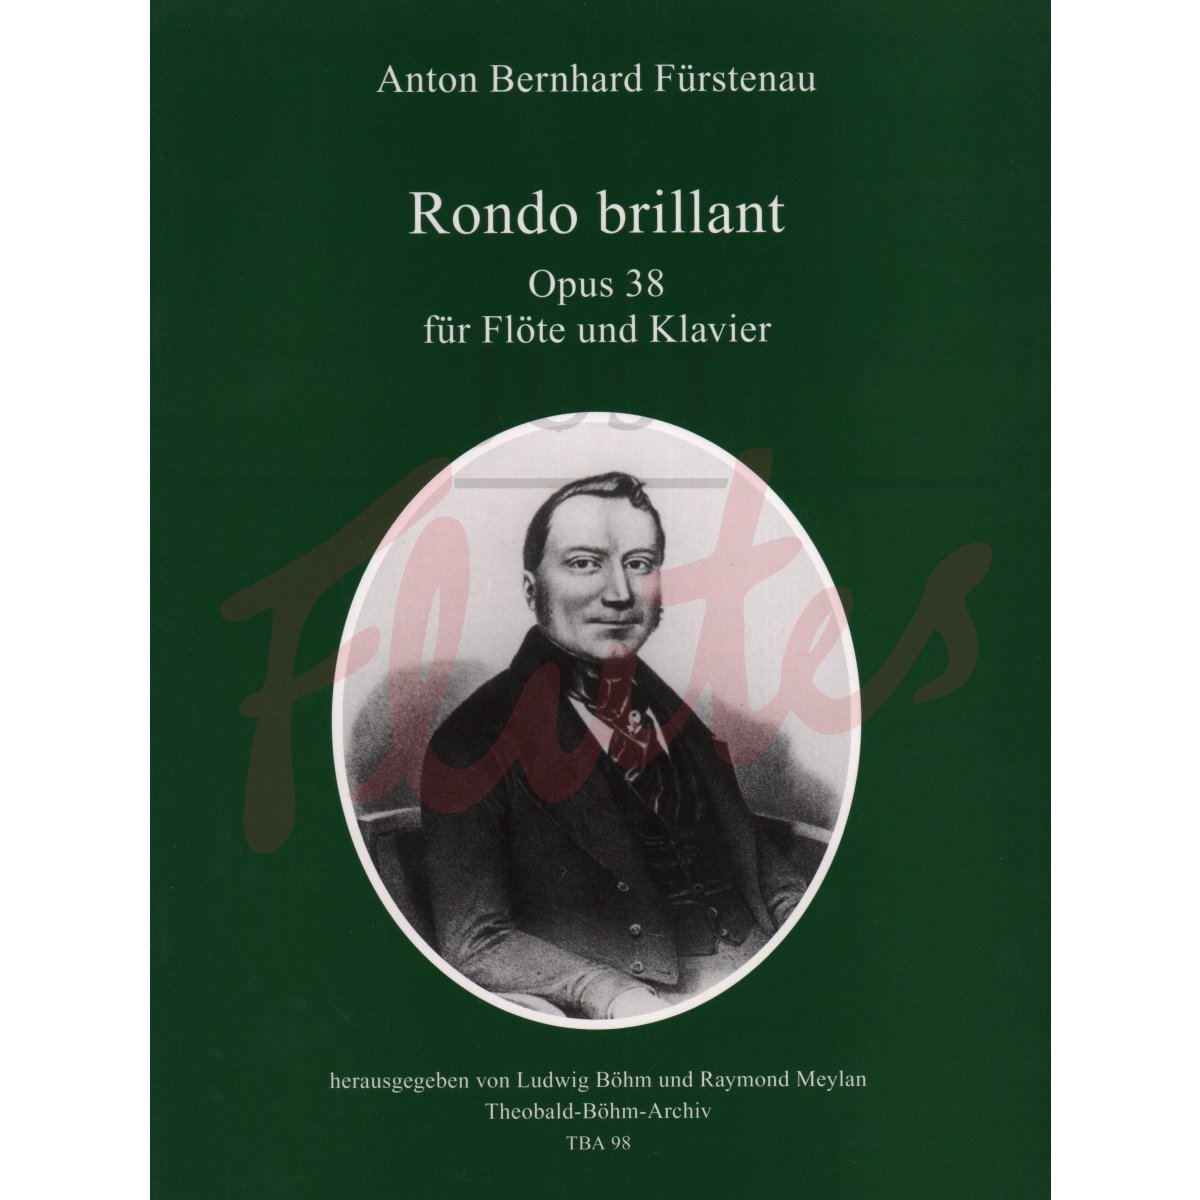 Rondo brillant for Flute and Piano